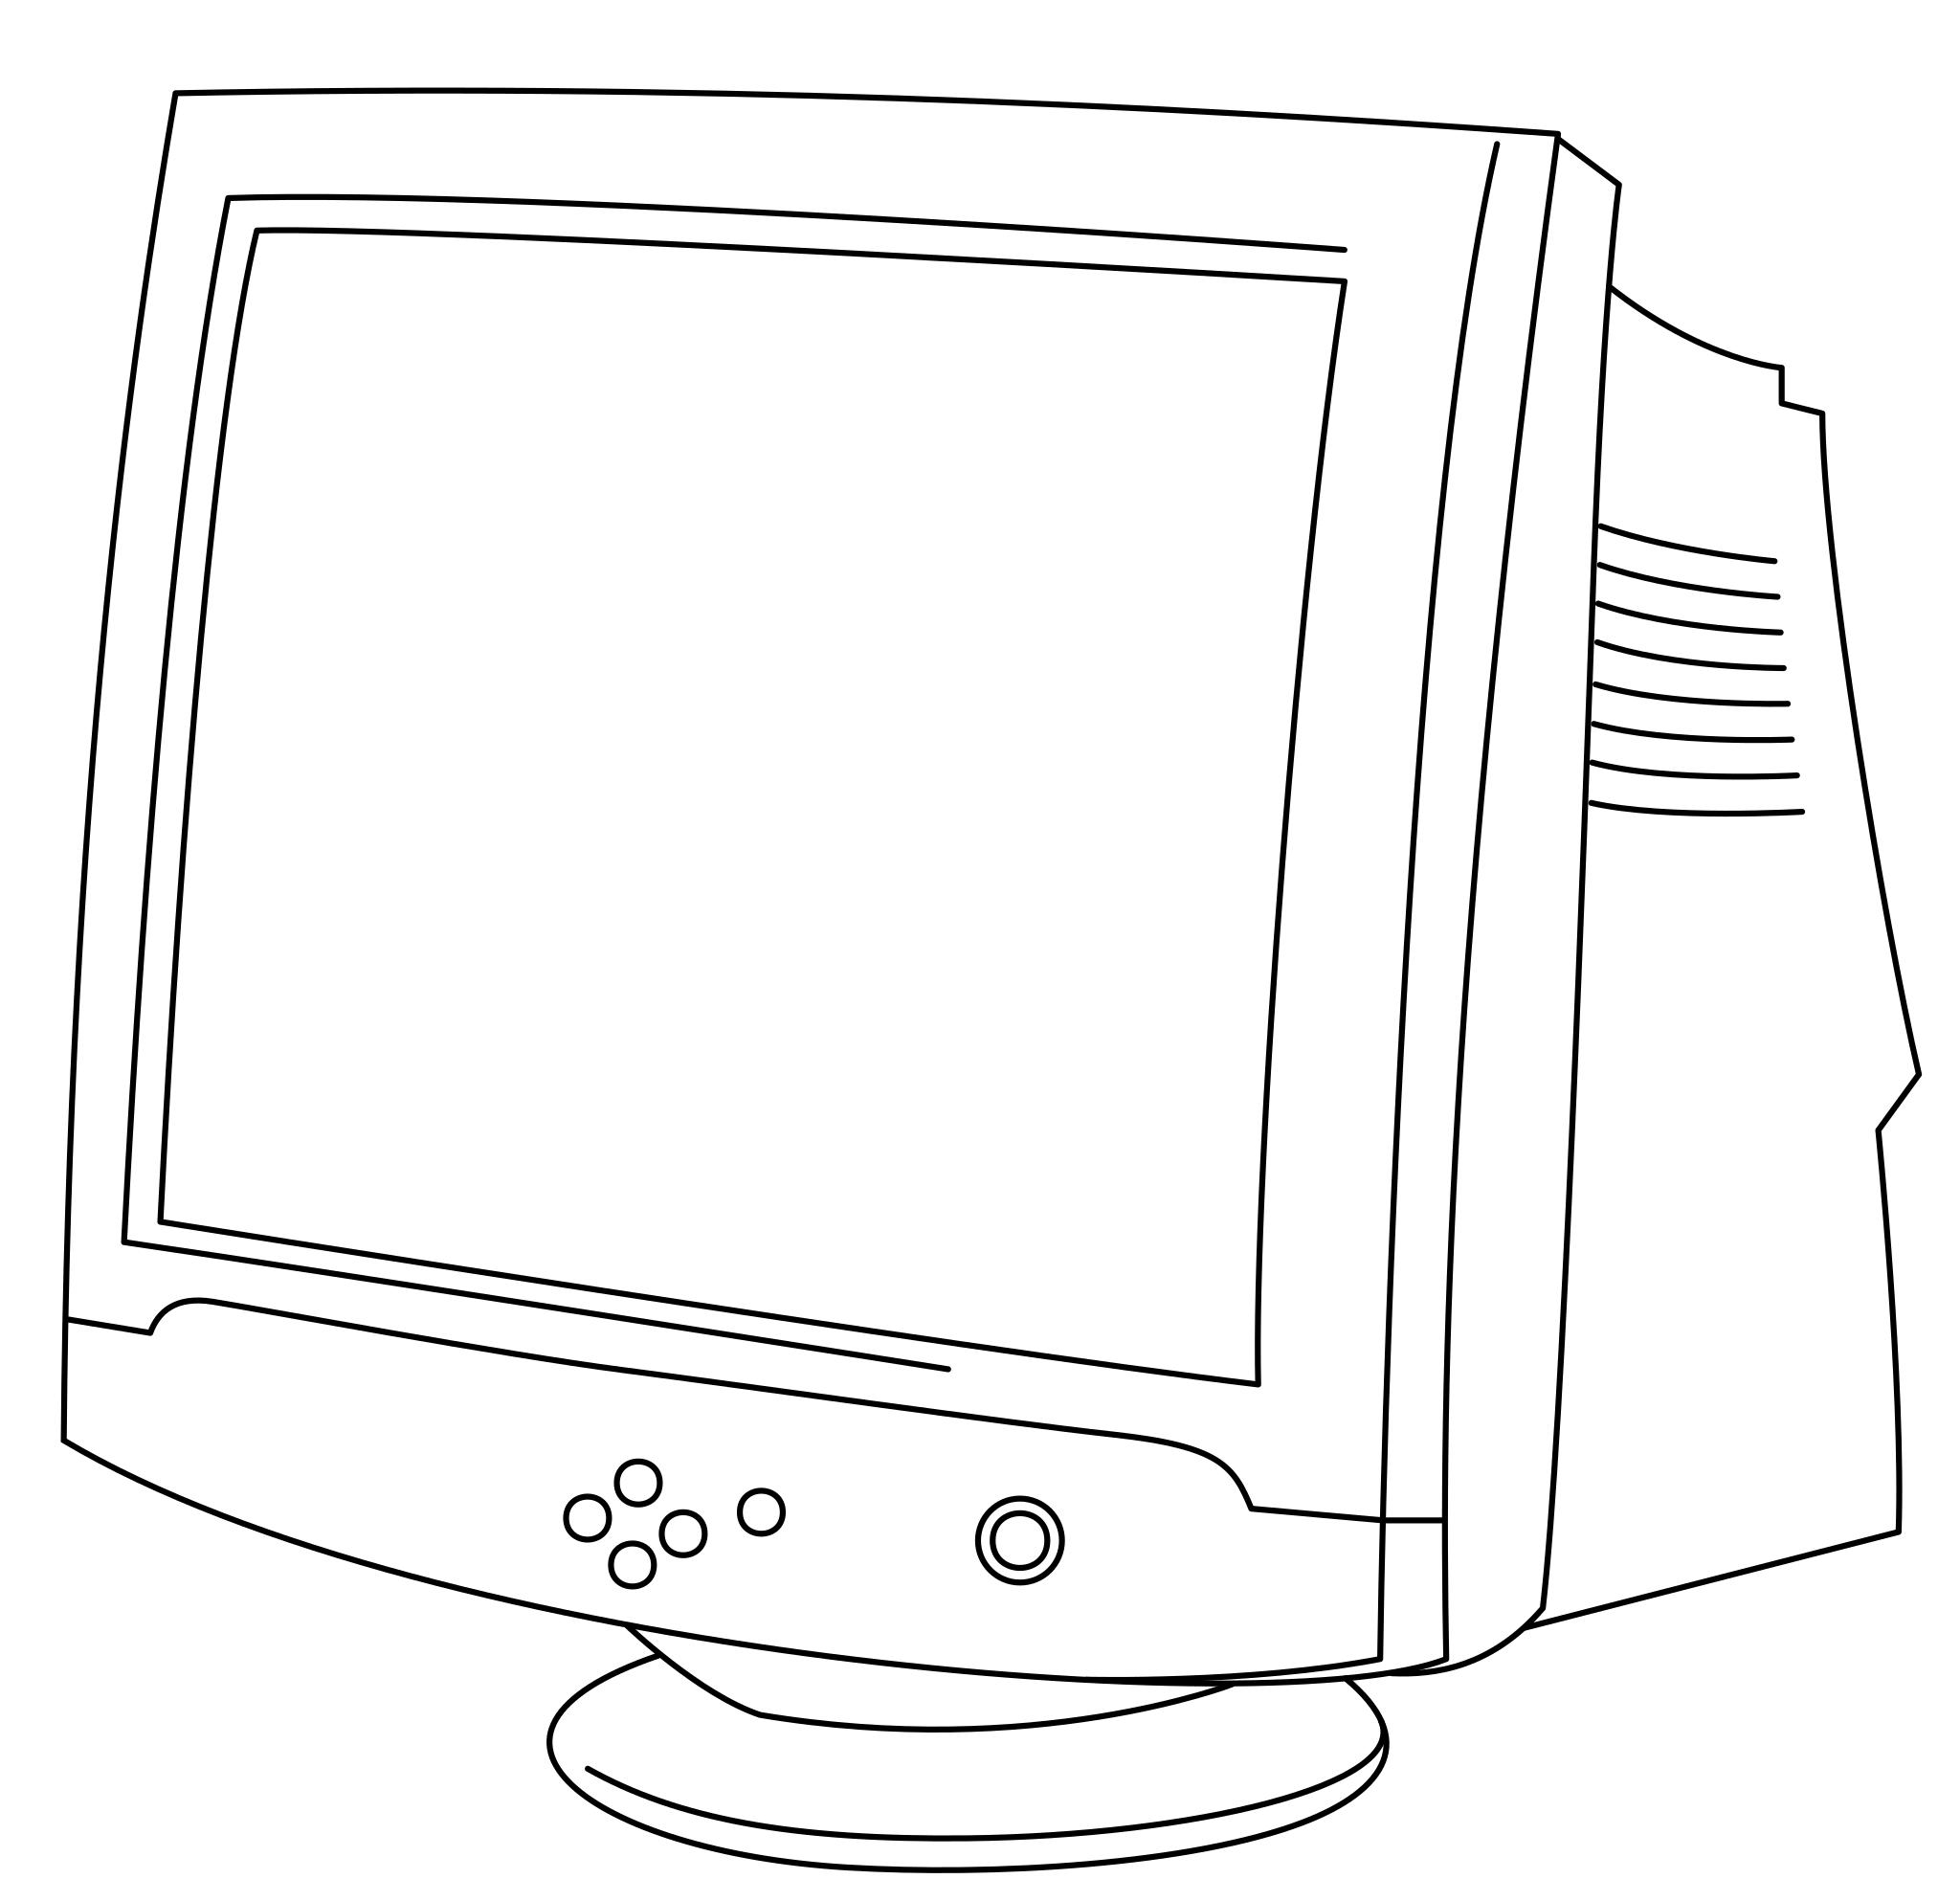 Компьютер рисунок